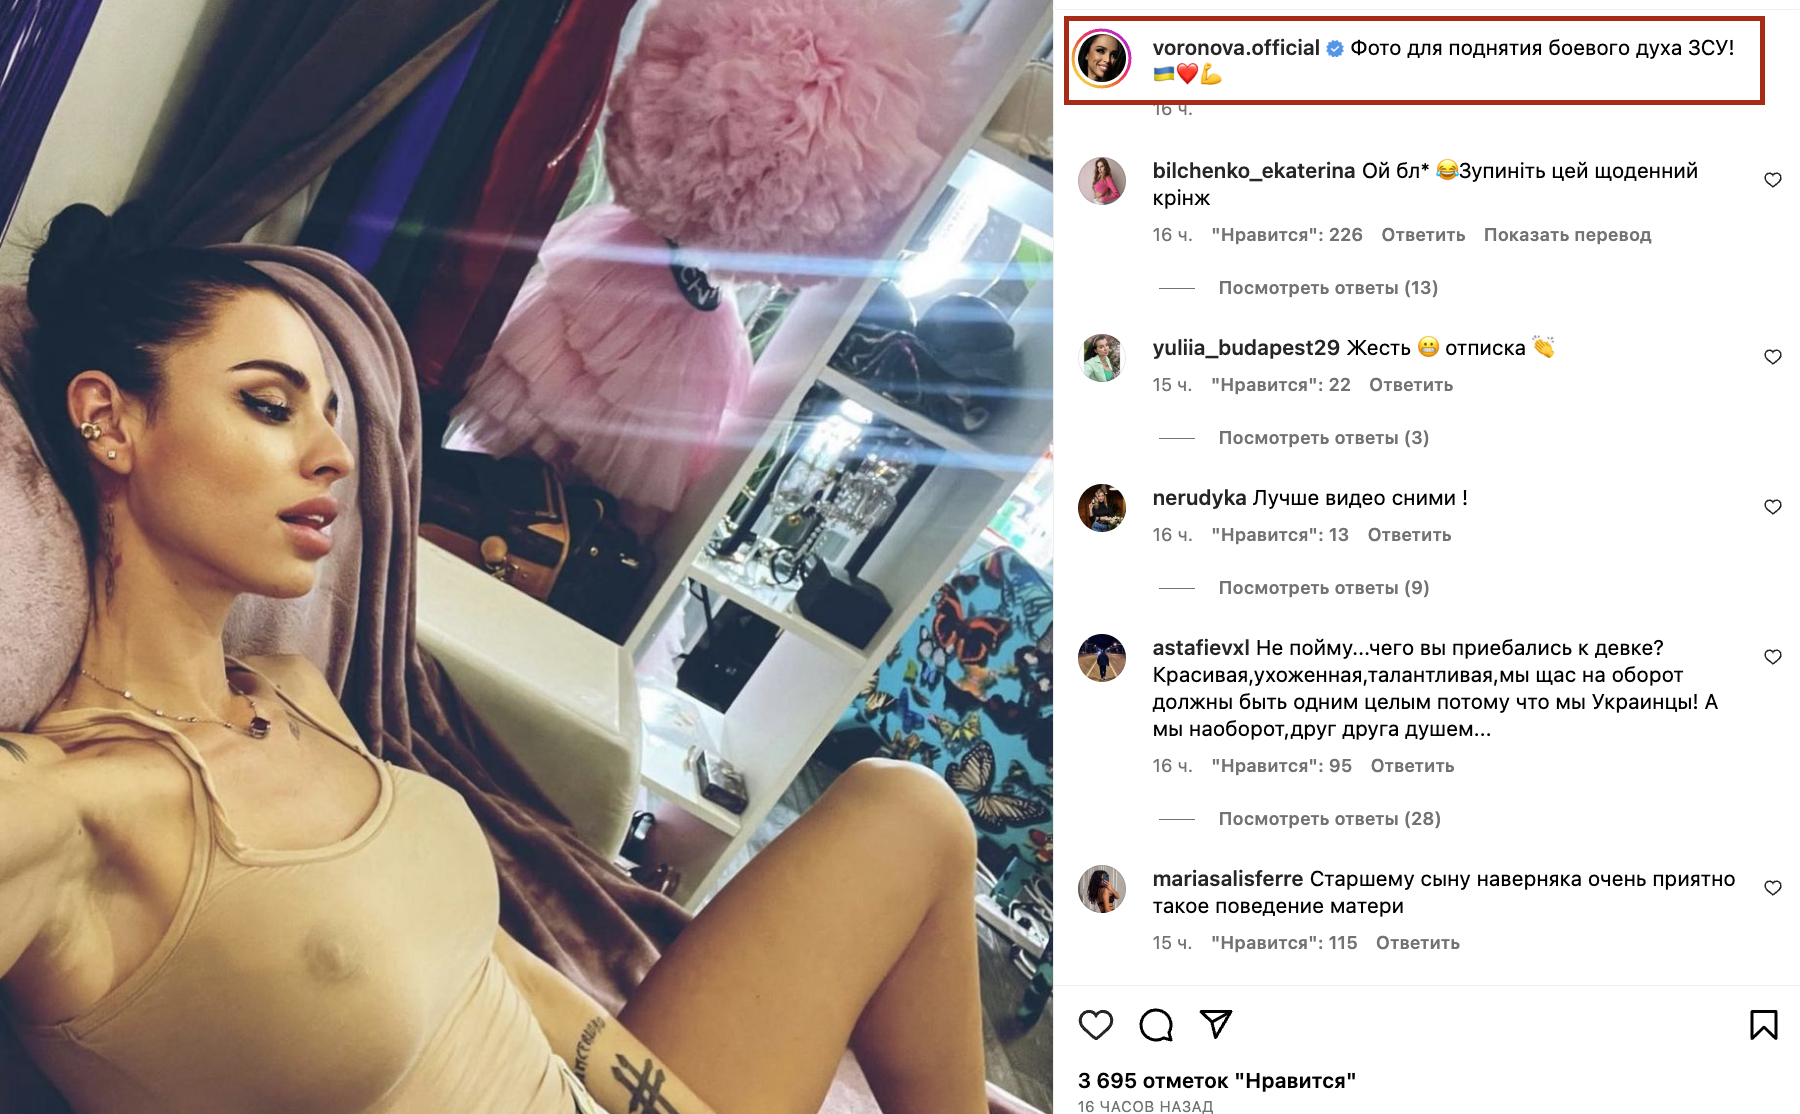 "Заберіть у неї телефон": Воронова, яка зняла ППО, оскандалилася через вульгарне фото "для підняття бойового духу ЗСУ"